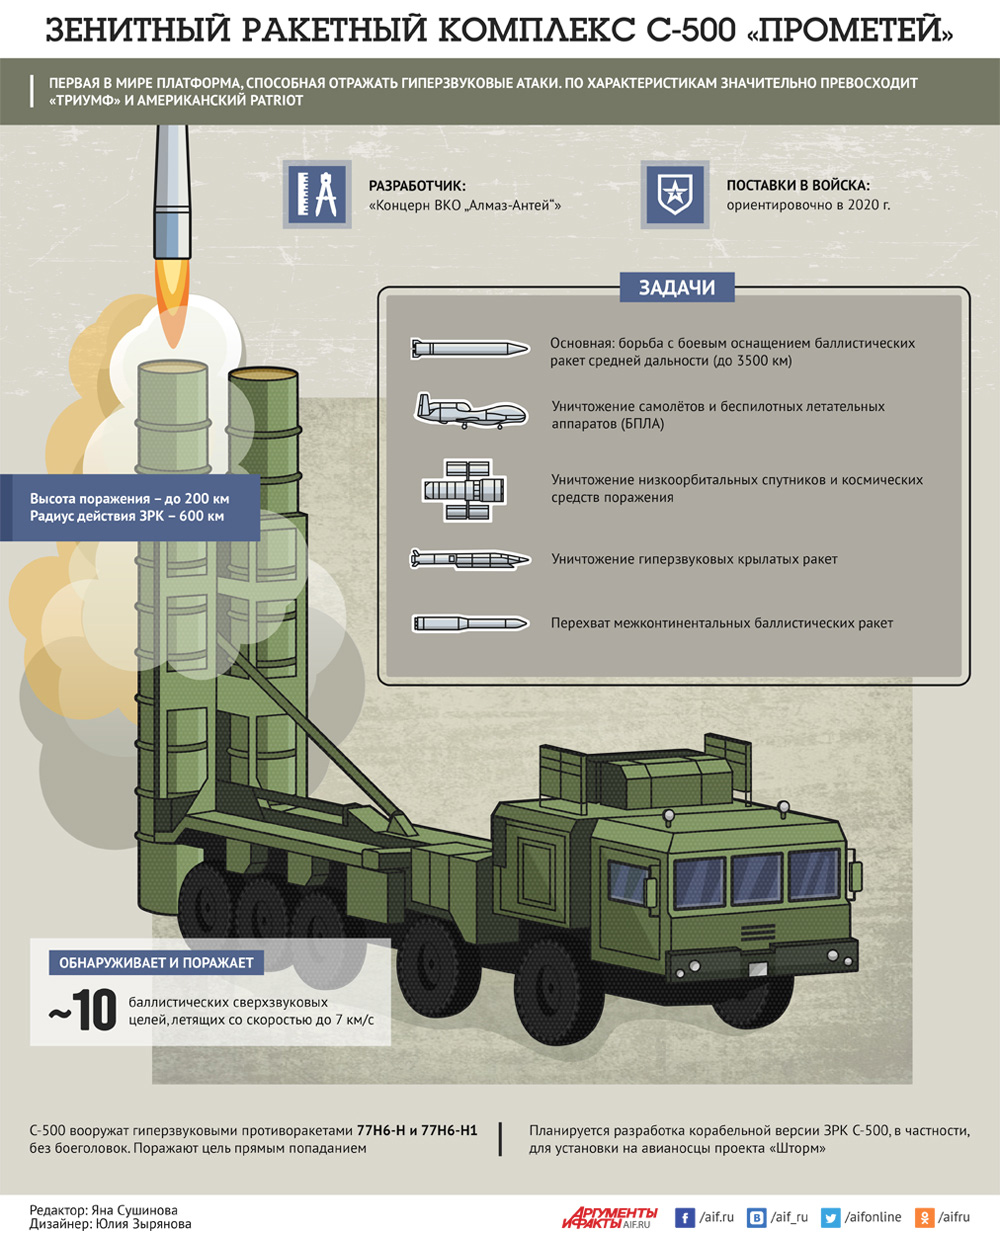 Ракетный комплекс с-500 - s-500 missile system